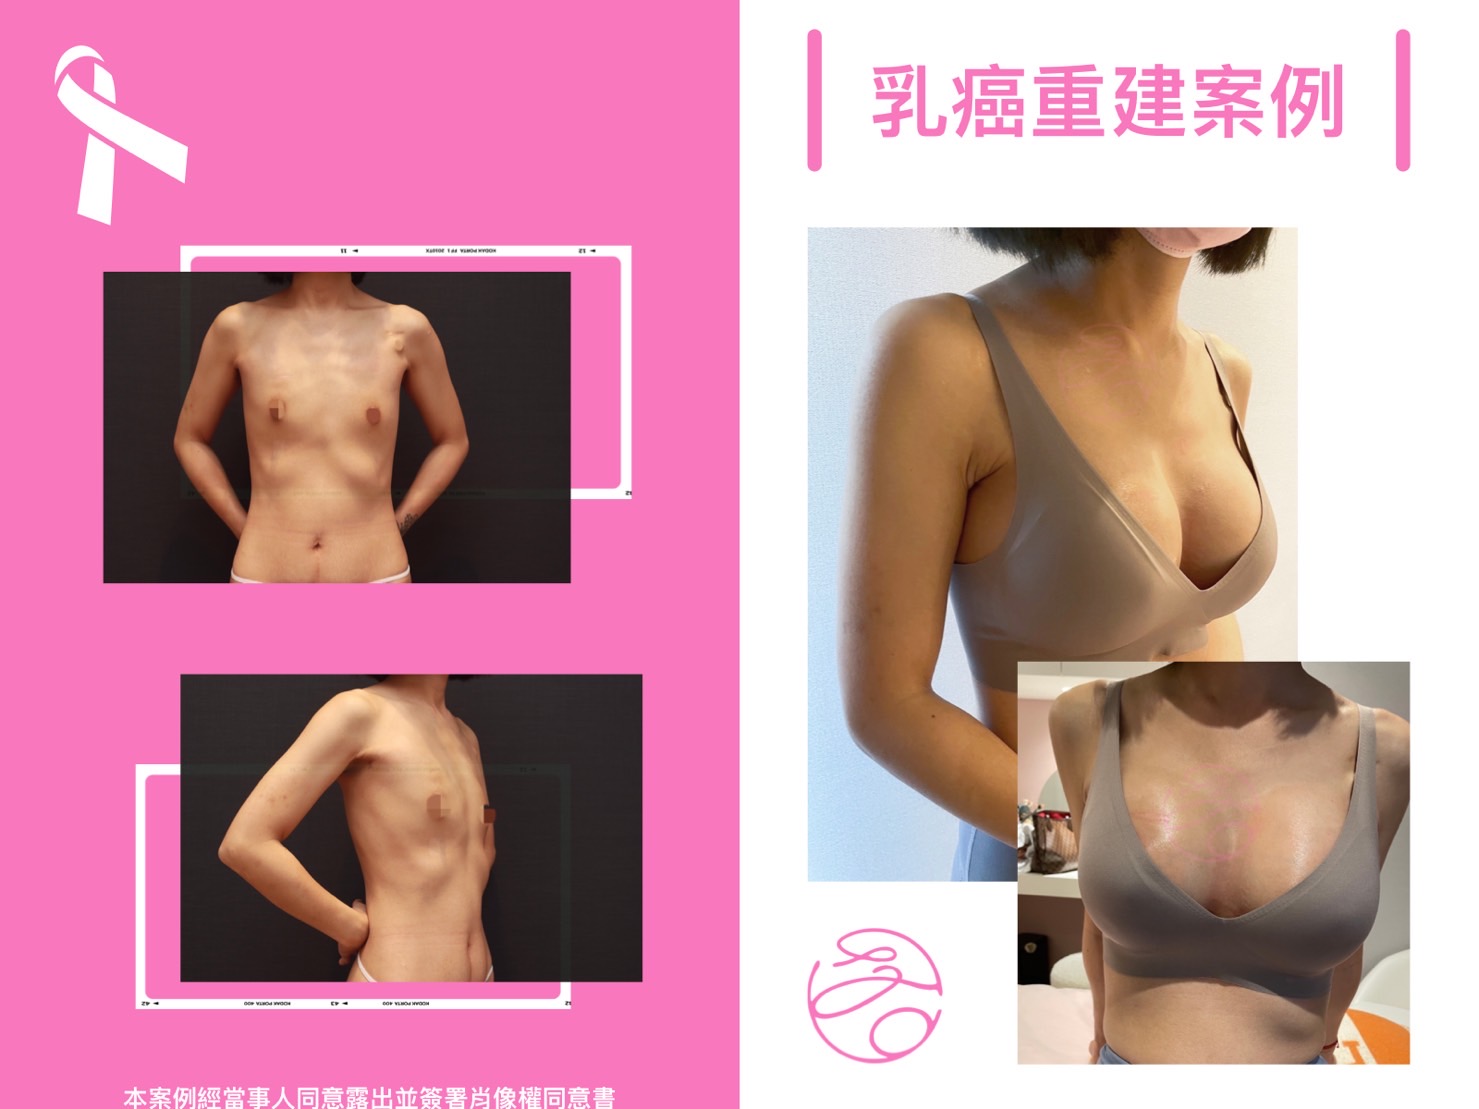 乳房重建手術實際案例照片